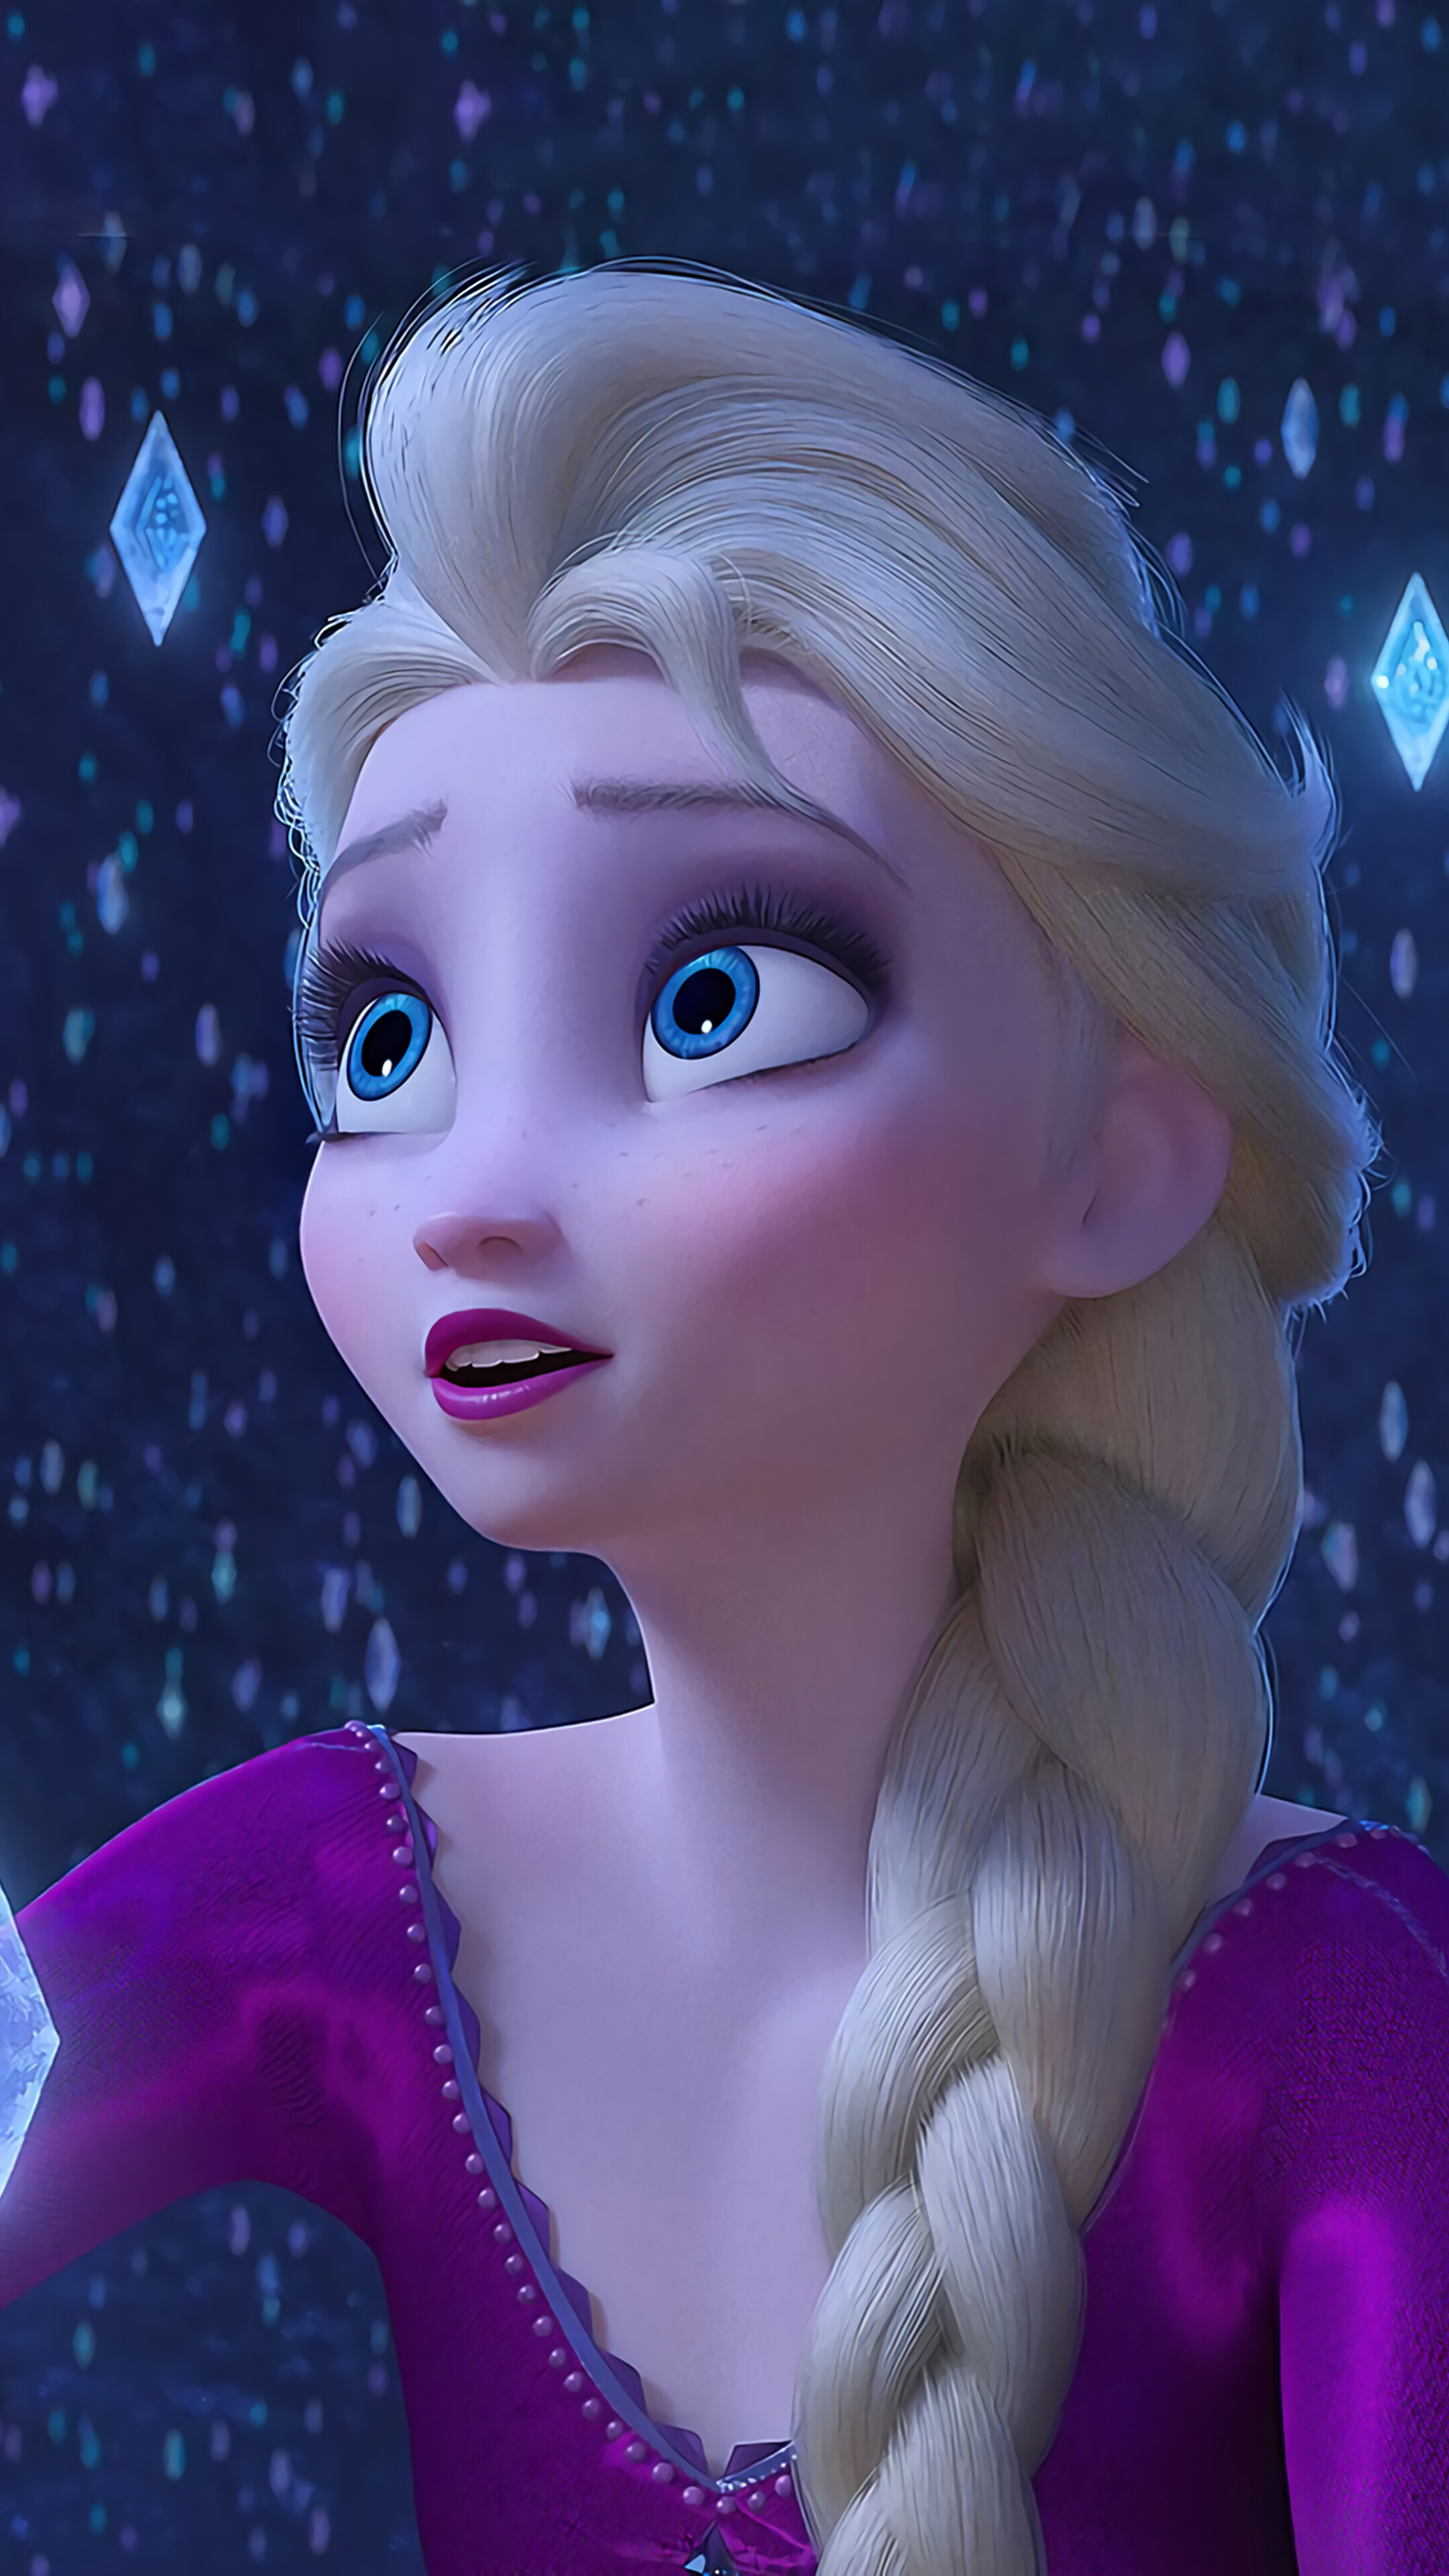 21+] Frozen 2 Elsa Desktop Wallpapers - WallpaperSafari